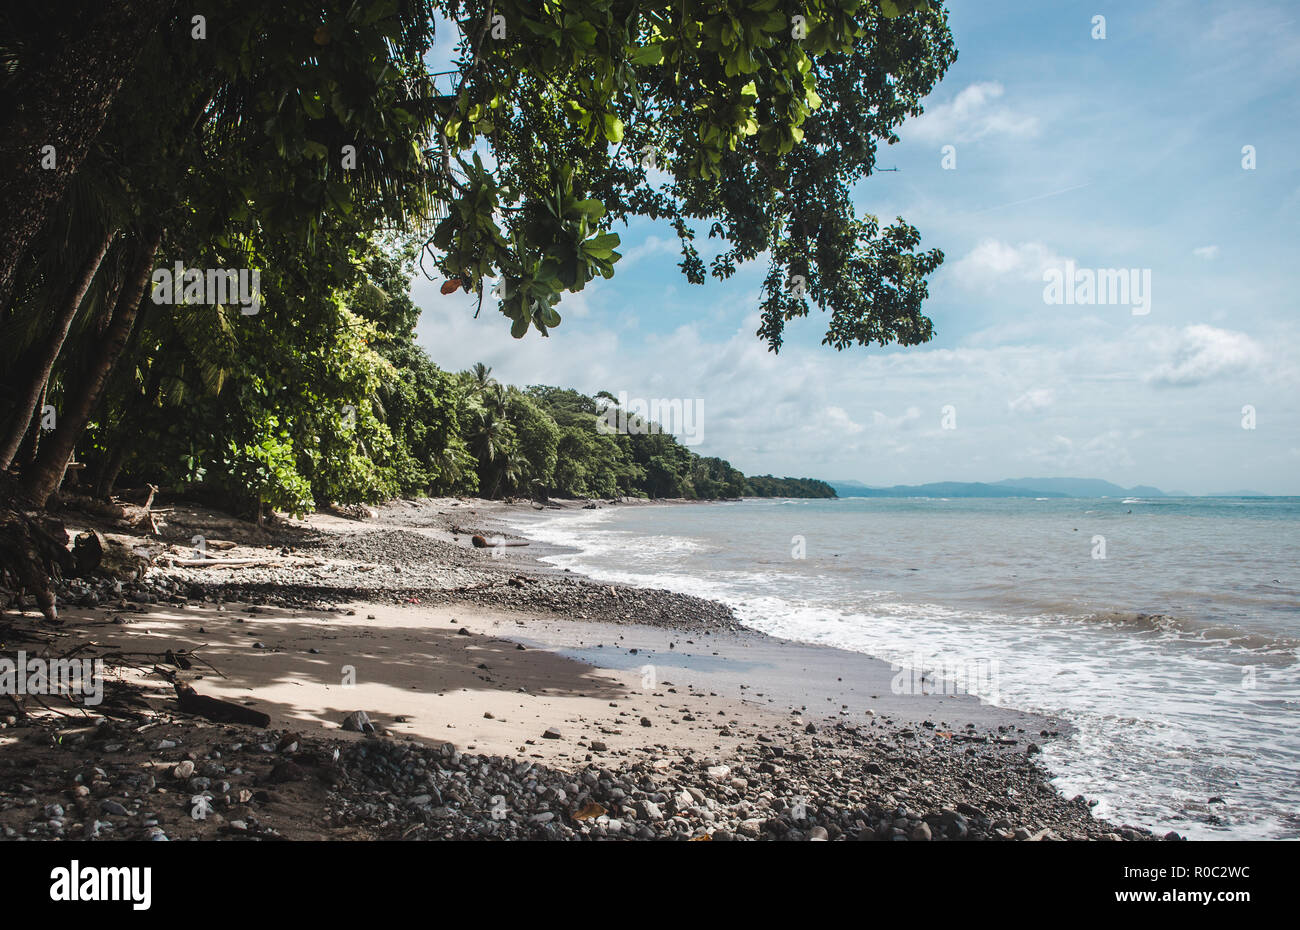 Dichten Wald gibt Weg für einen dunklen steinigen Strand am Kap von der Halbinsel Nicoya in Costa Rica, in der Nähe von Malpaís Stockfoto